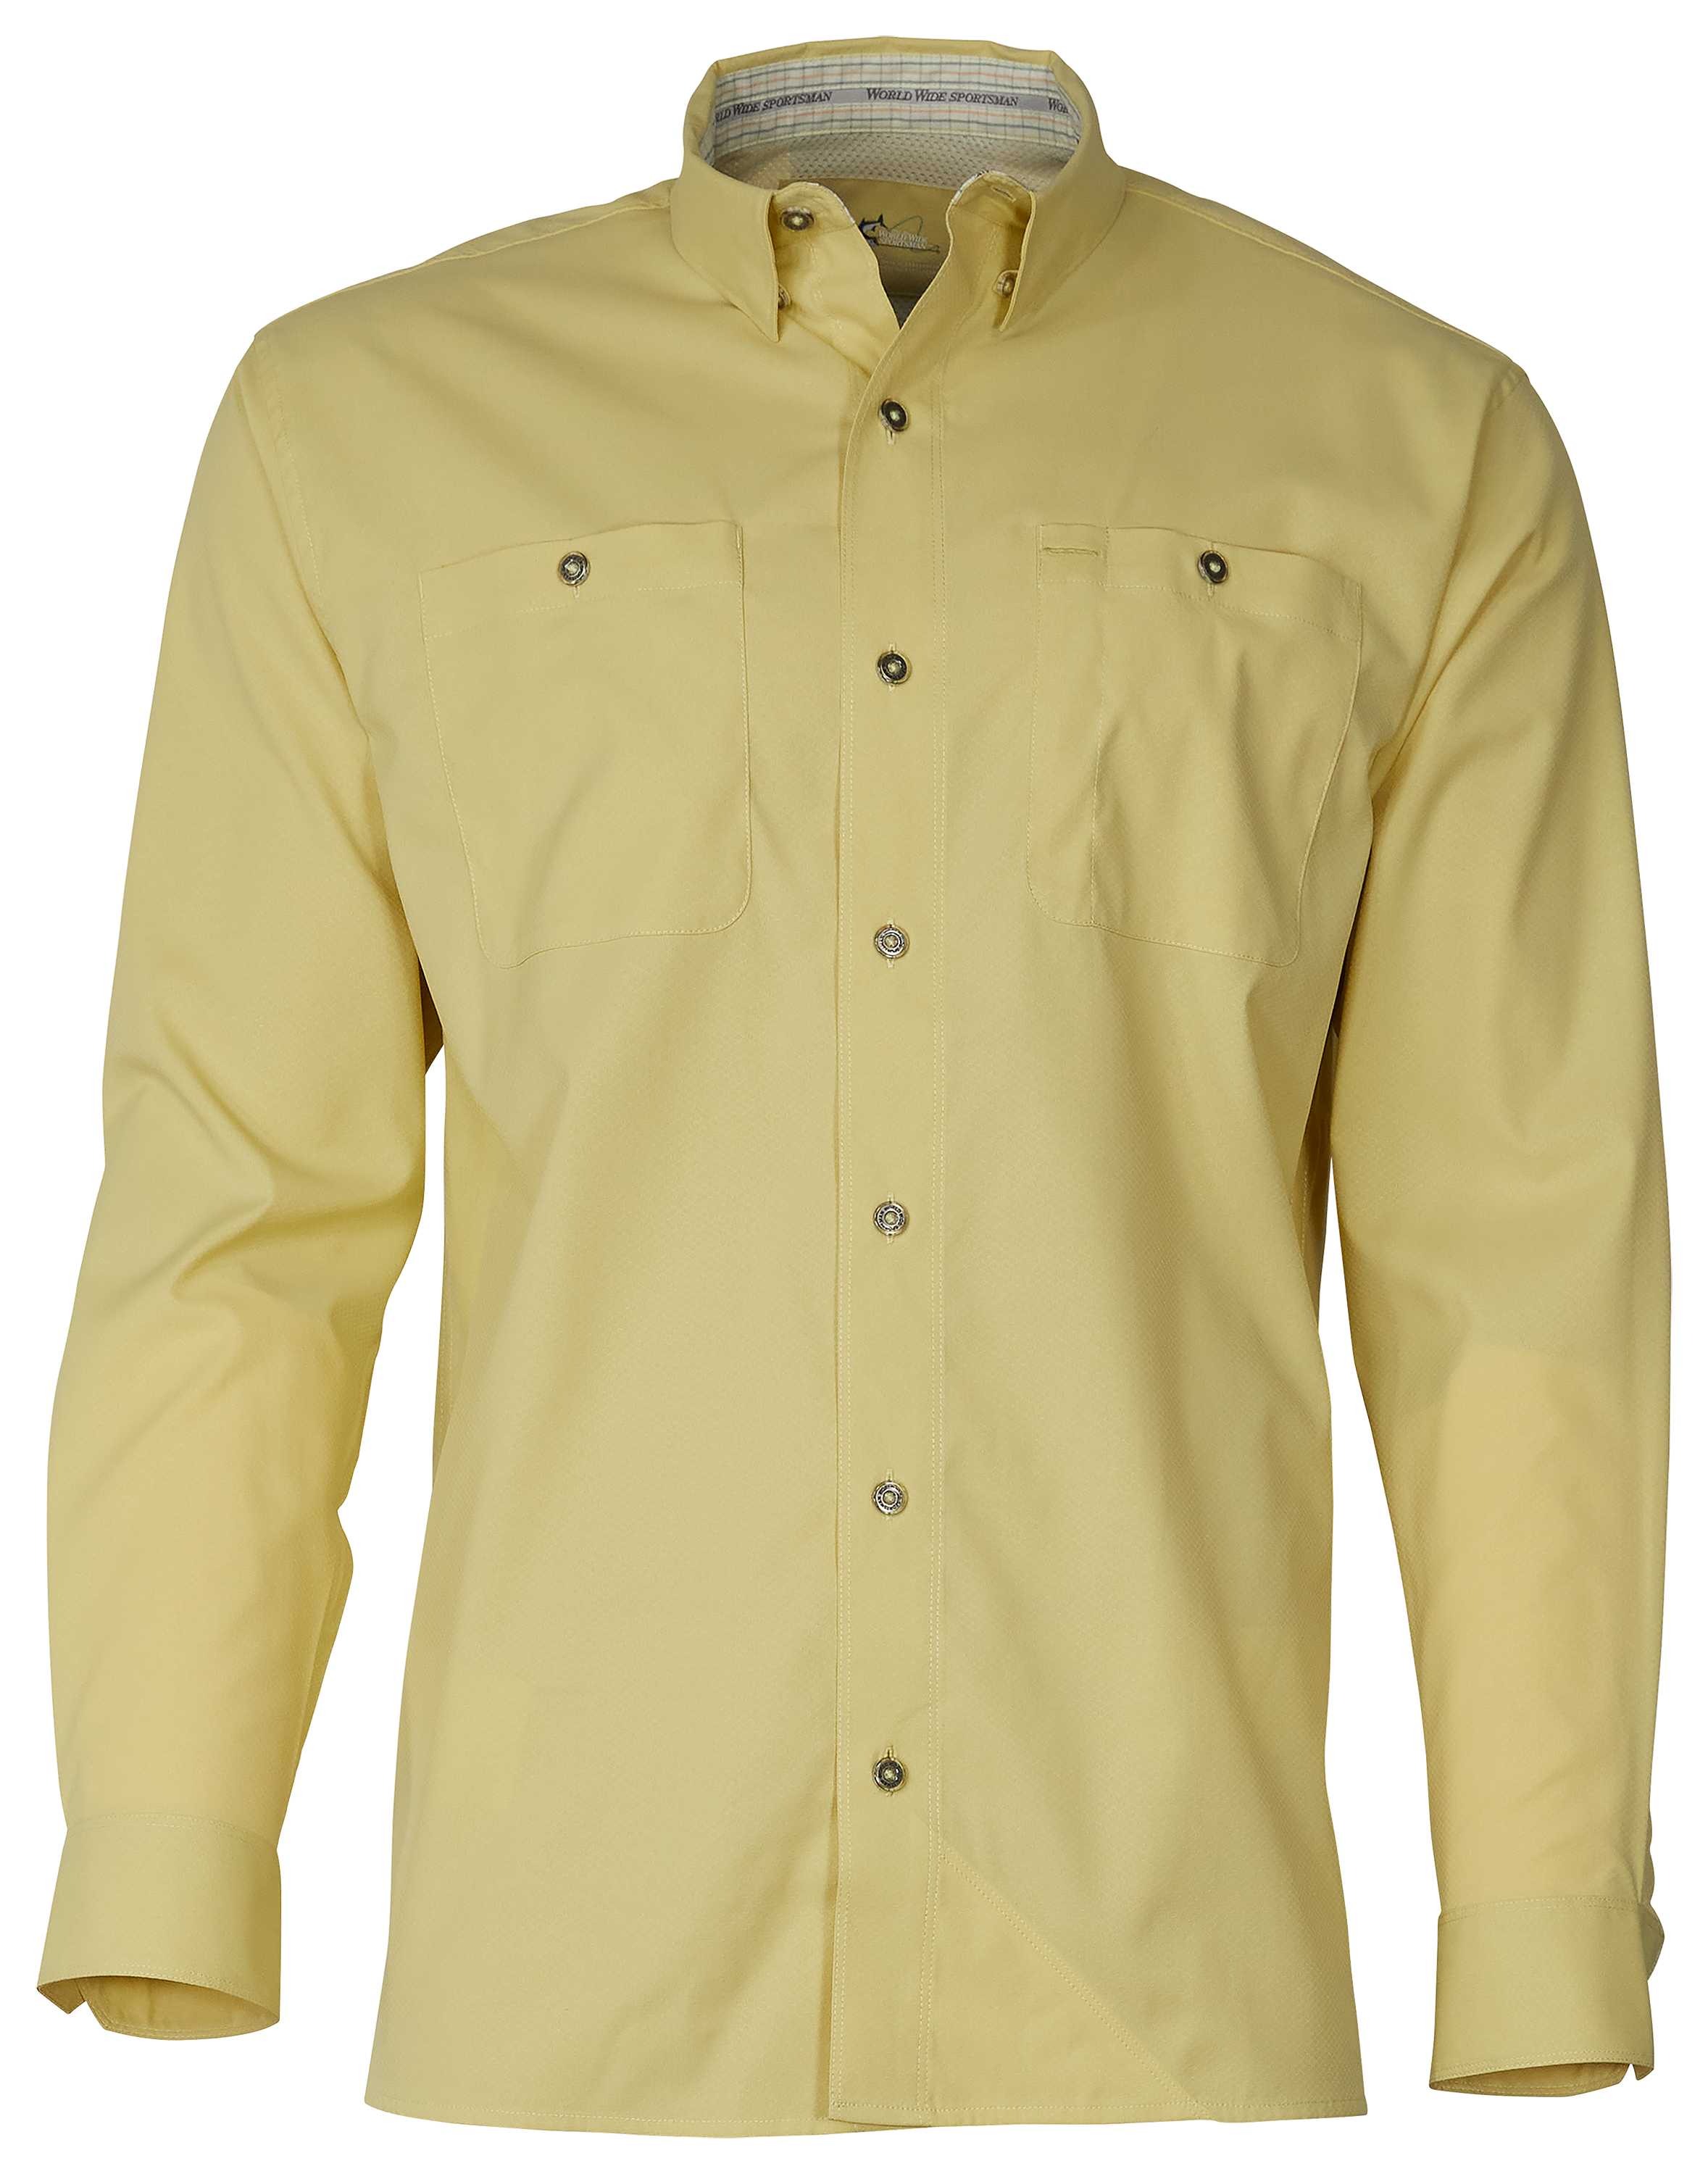 Whiskeytown Lake Store: World Wide Sportsman Nylon Angler Long-Sleeve Shirt  for Men - Seagrass - S